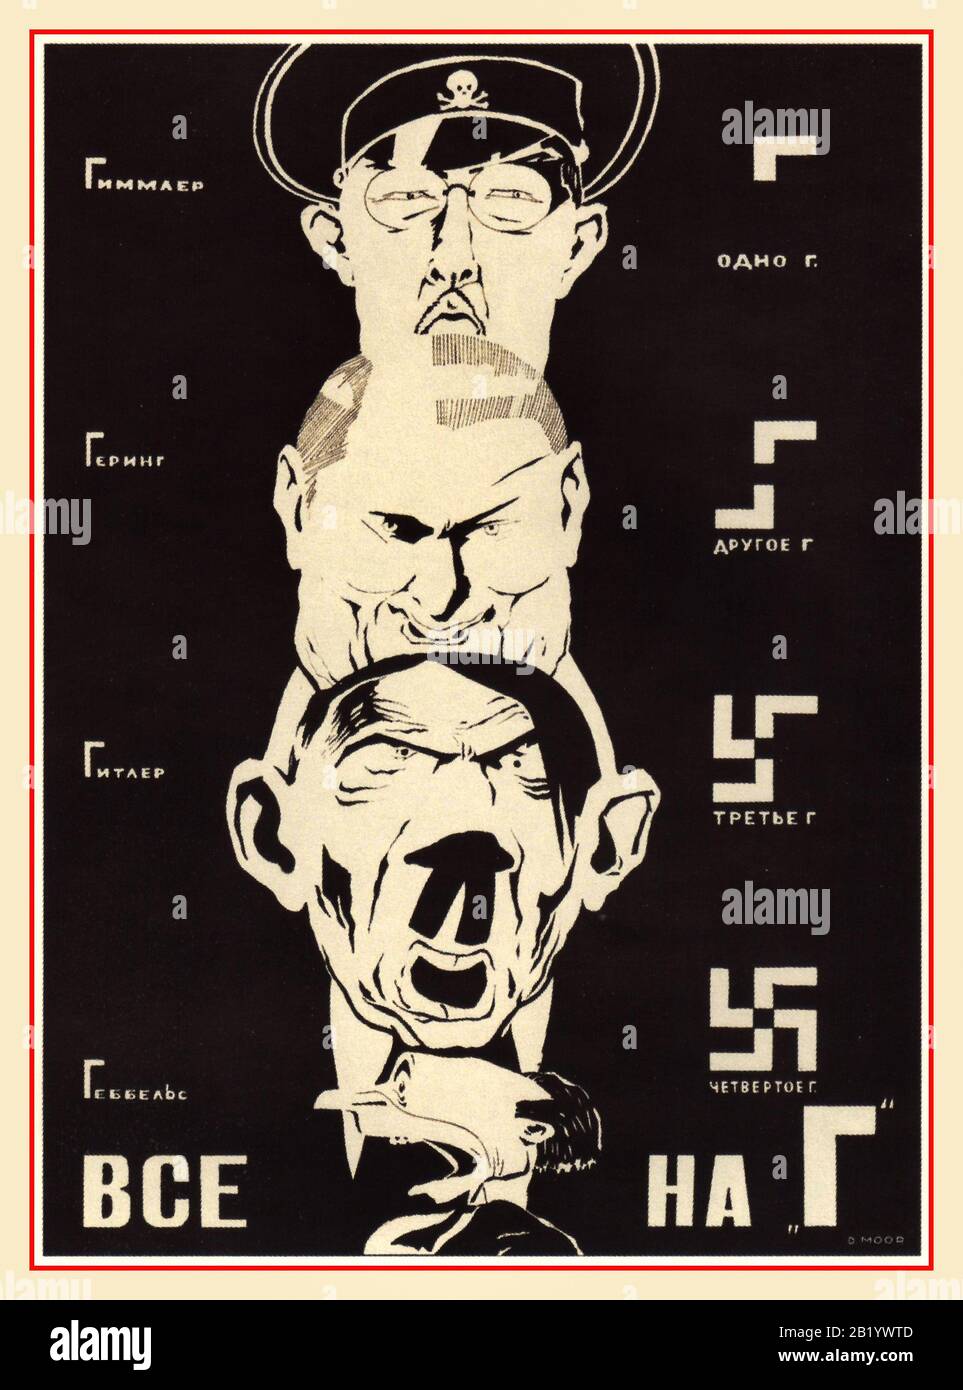 Cartel de Propaganda rusa contra el arte nazi de 1940 con: Top, HIMMLER, GOERING, HITLER, GOEBBELS, caricaturas de caricaturas de los principales miembros del Partido Nazi, con parodia insultante en sus nombres. Foto de stock